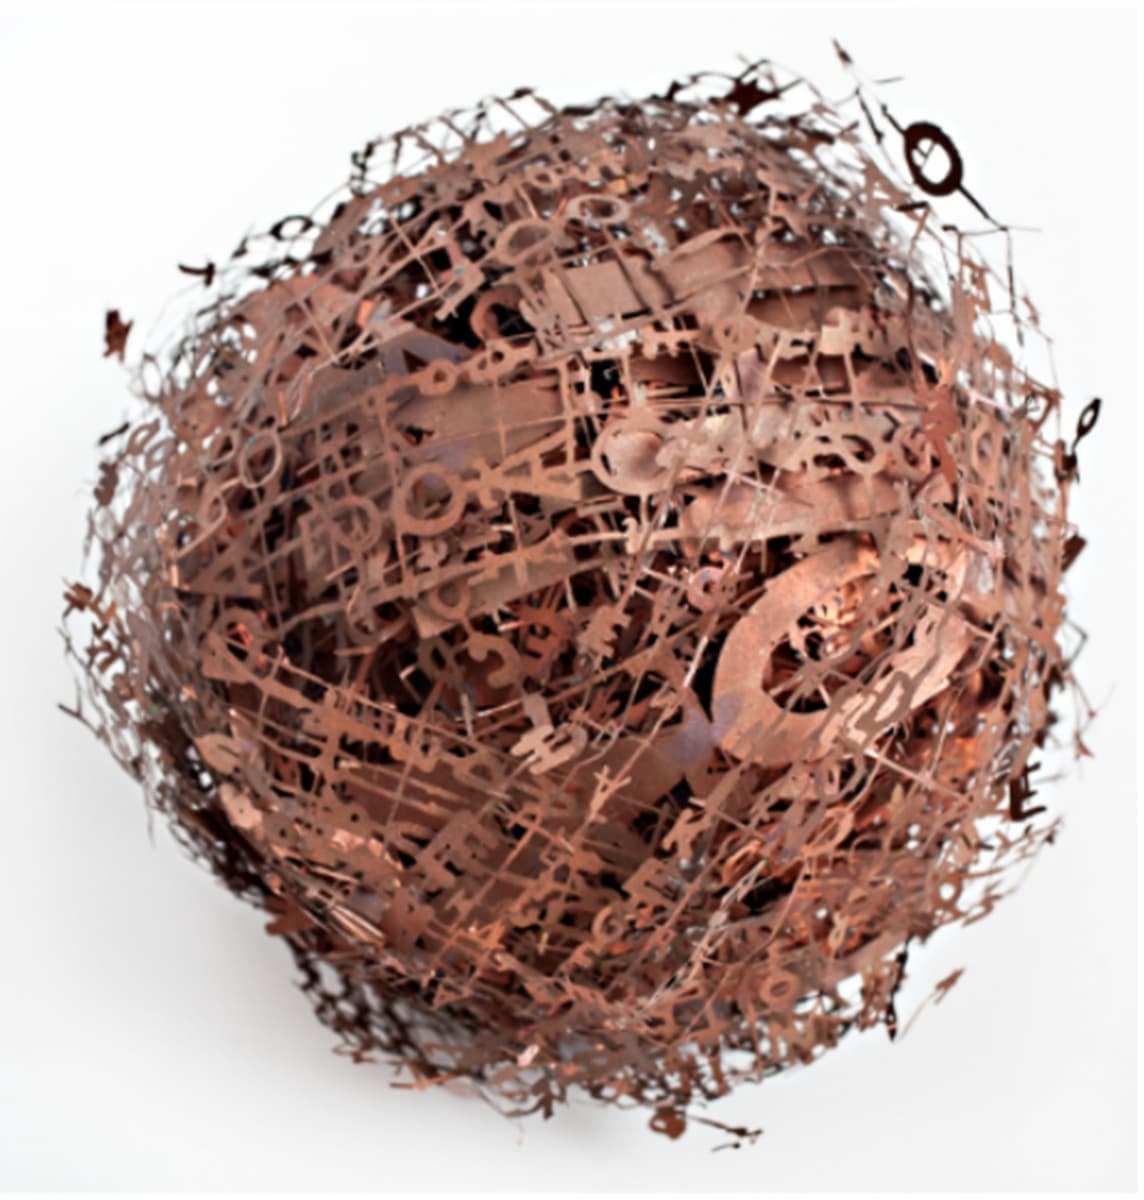 Hilal Sami Hilal – Spherical Book, 2022, copper/corrosion, 20 x 20 cm. Photo: Bruno Coelho.